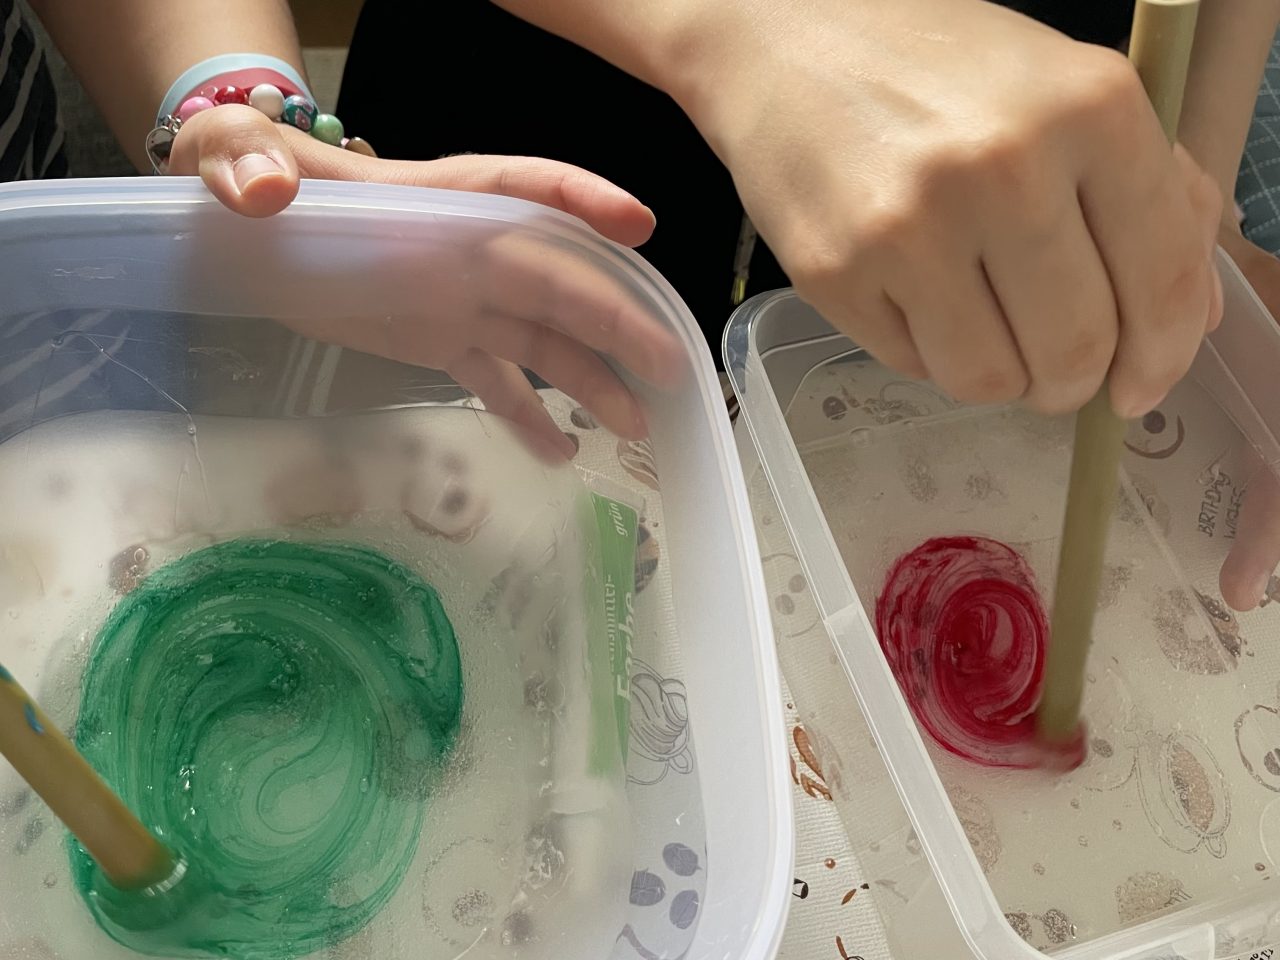 zwei Kinder rühren rote und grüne Farbe in zwei Schüsseln mit durchsichtigem Kleber